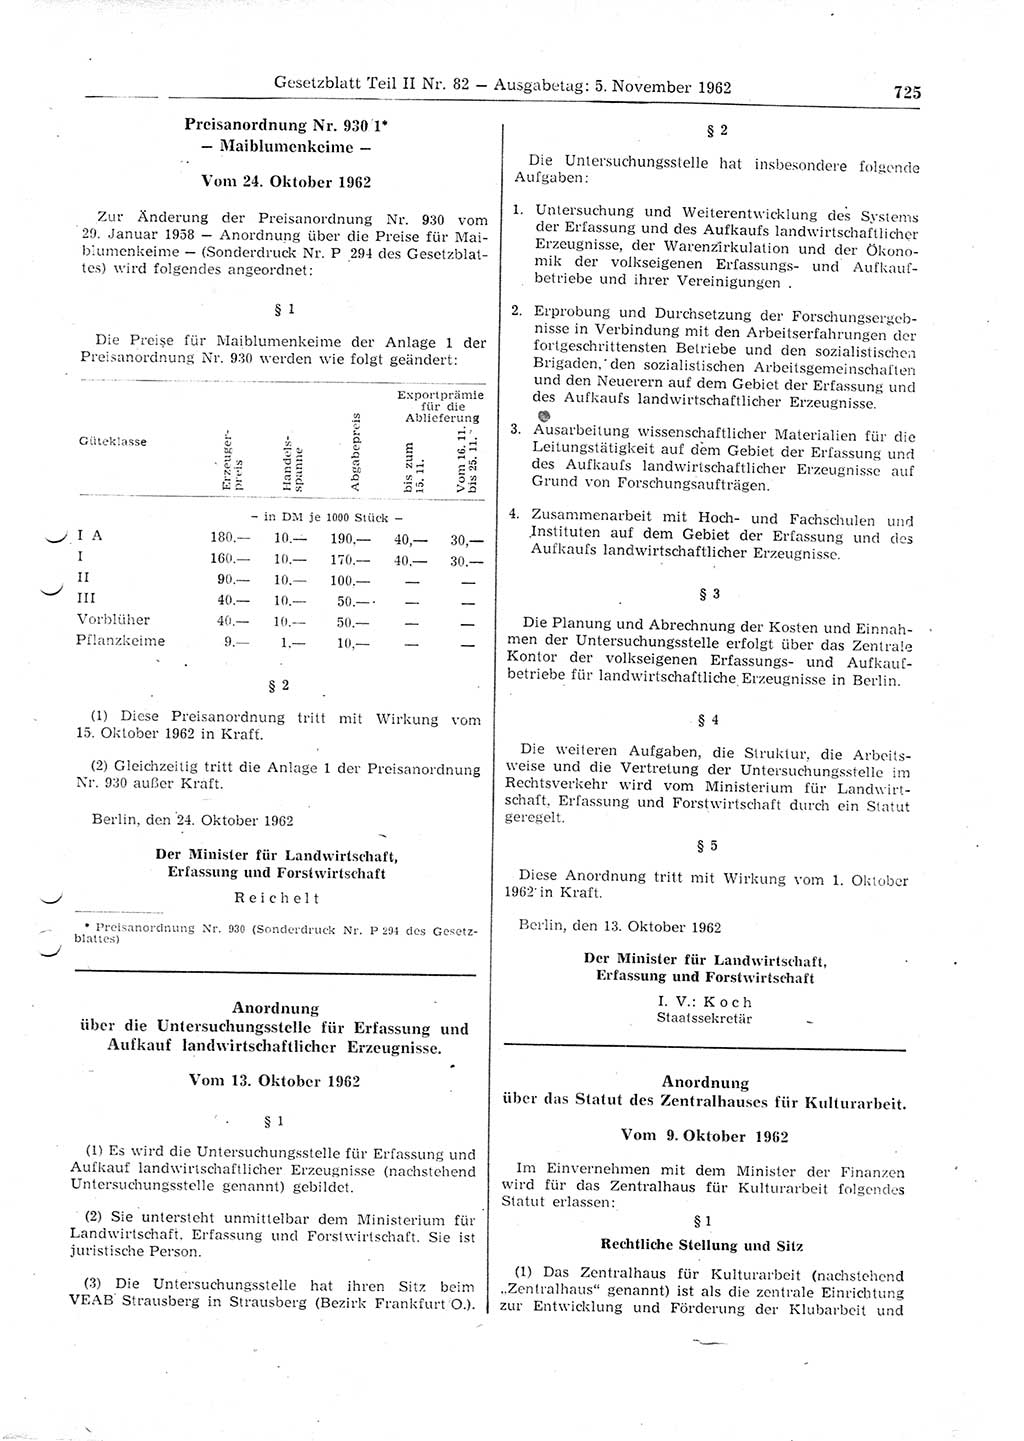 Gesetzblatt (GBl.) der Deutschen Demokratischen Republik (DDR) Teil ⅠⅠ 1962, Seite 725 (GBl. DDR ⅠⅠ 1962, S. 725)